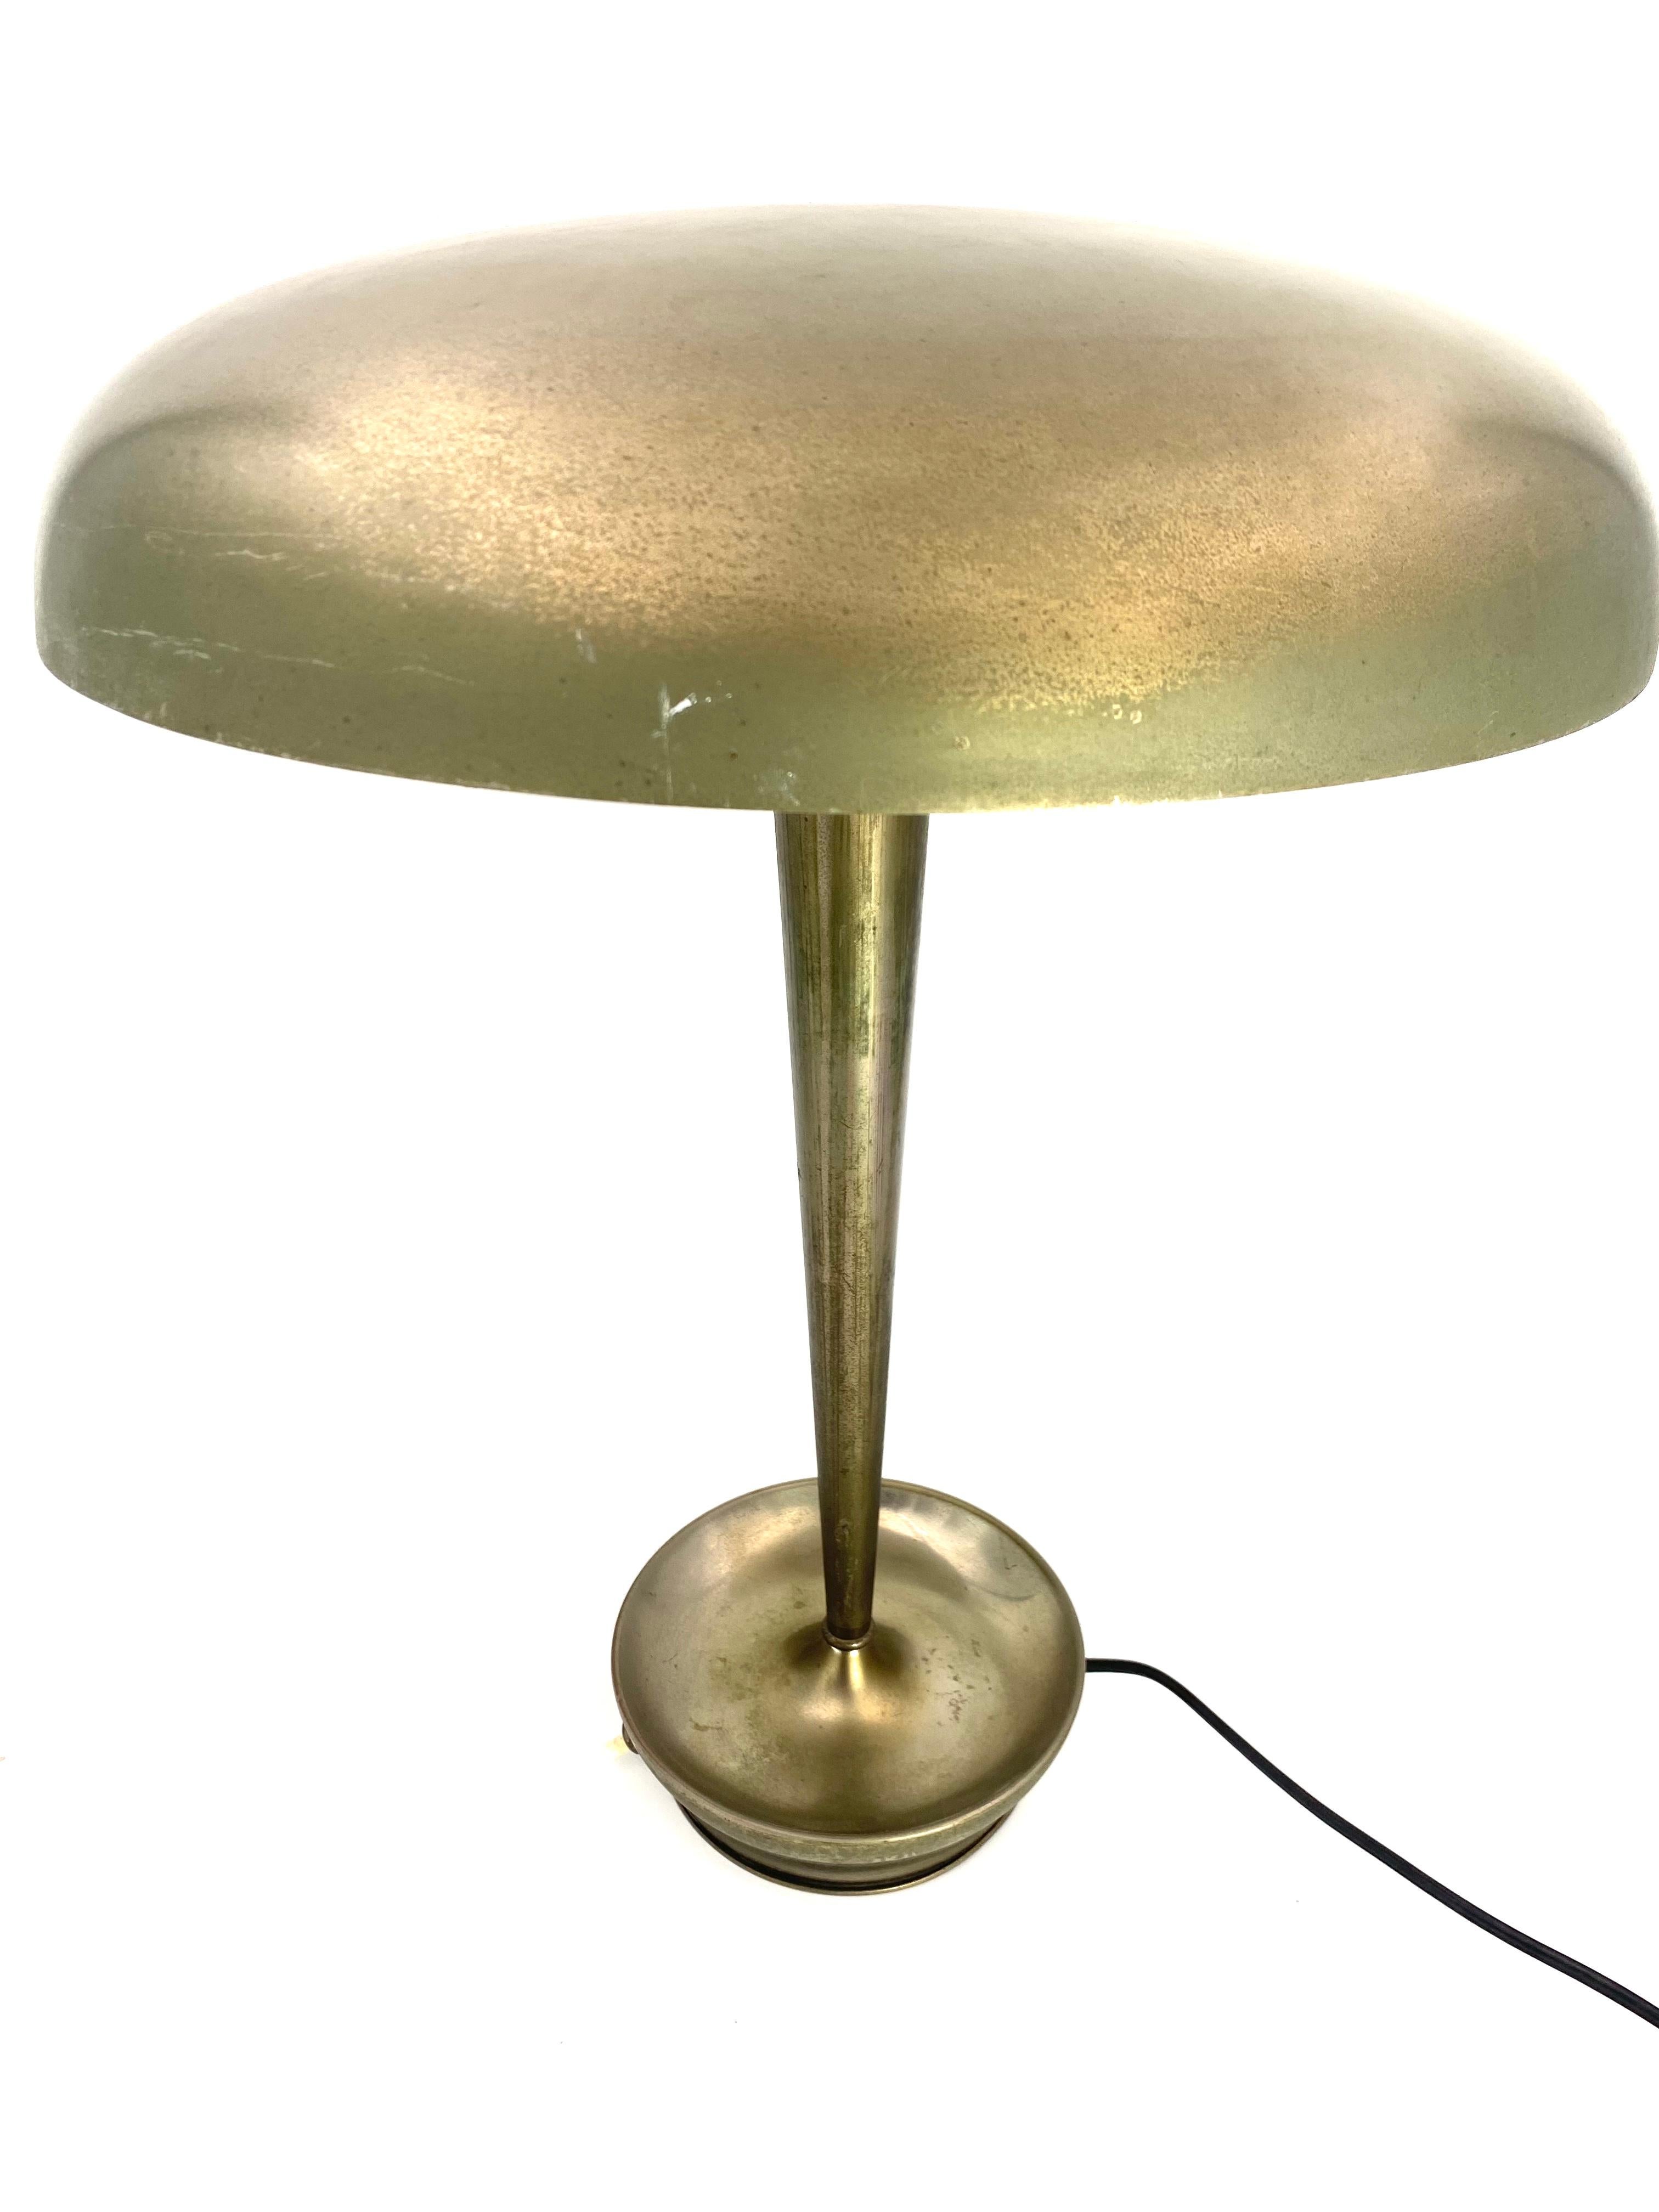 Brass Stilnovo Desk Lamp Mod. D 4639, Stilnovo, Milan Italy, circa 1950s For Sale